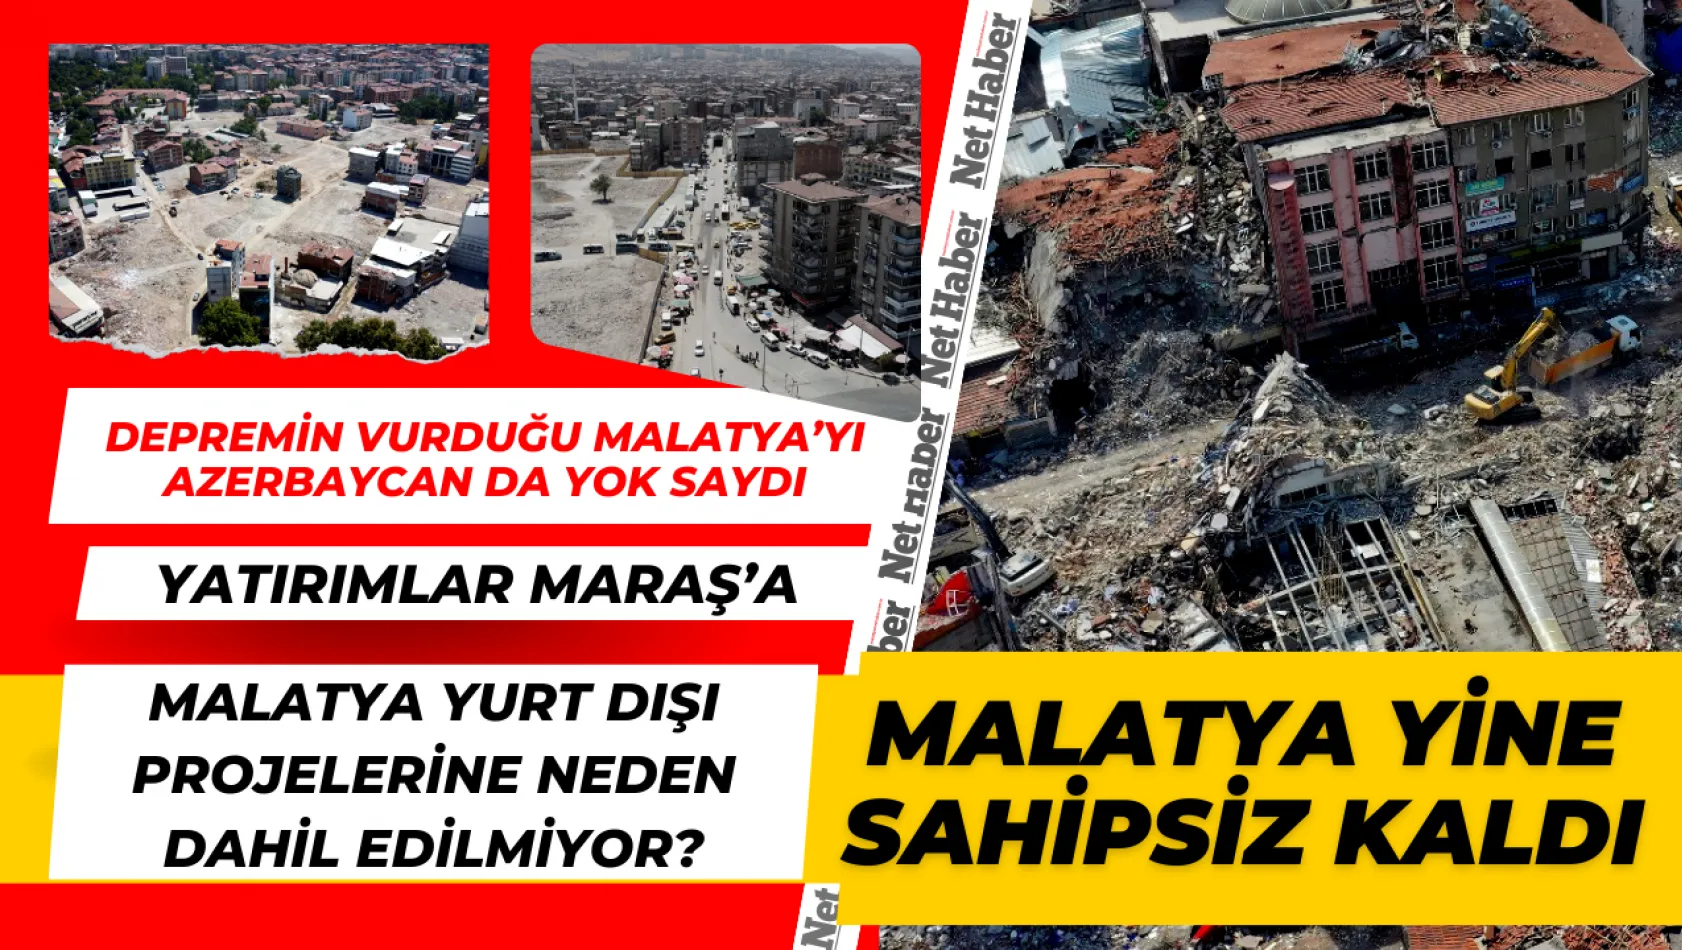 Depremin vurduğu Malatya'yı Azerbaycan da yok saydı! Malatya yine sahipsiz kaldı